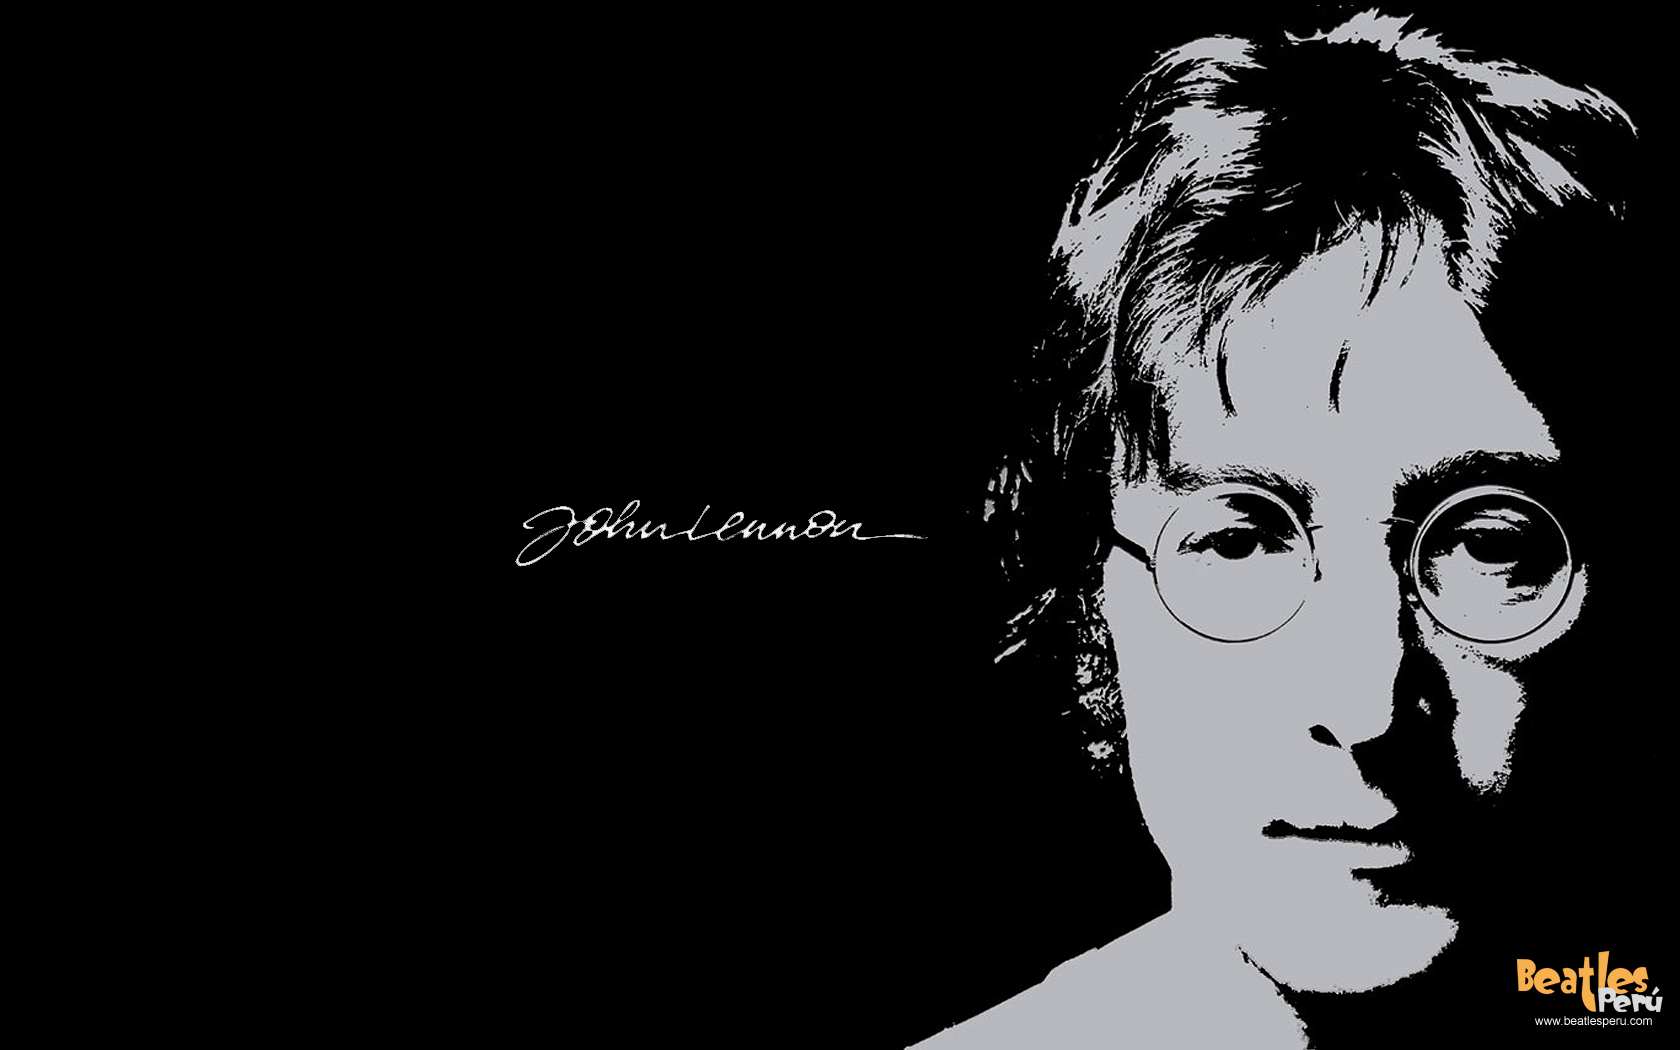 Fonds d'écran John Lennon : tous les wallpapers John Lennon